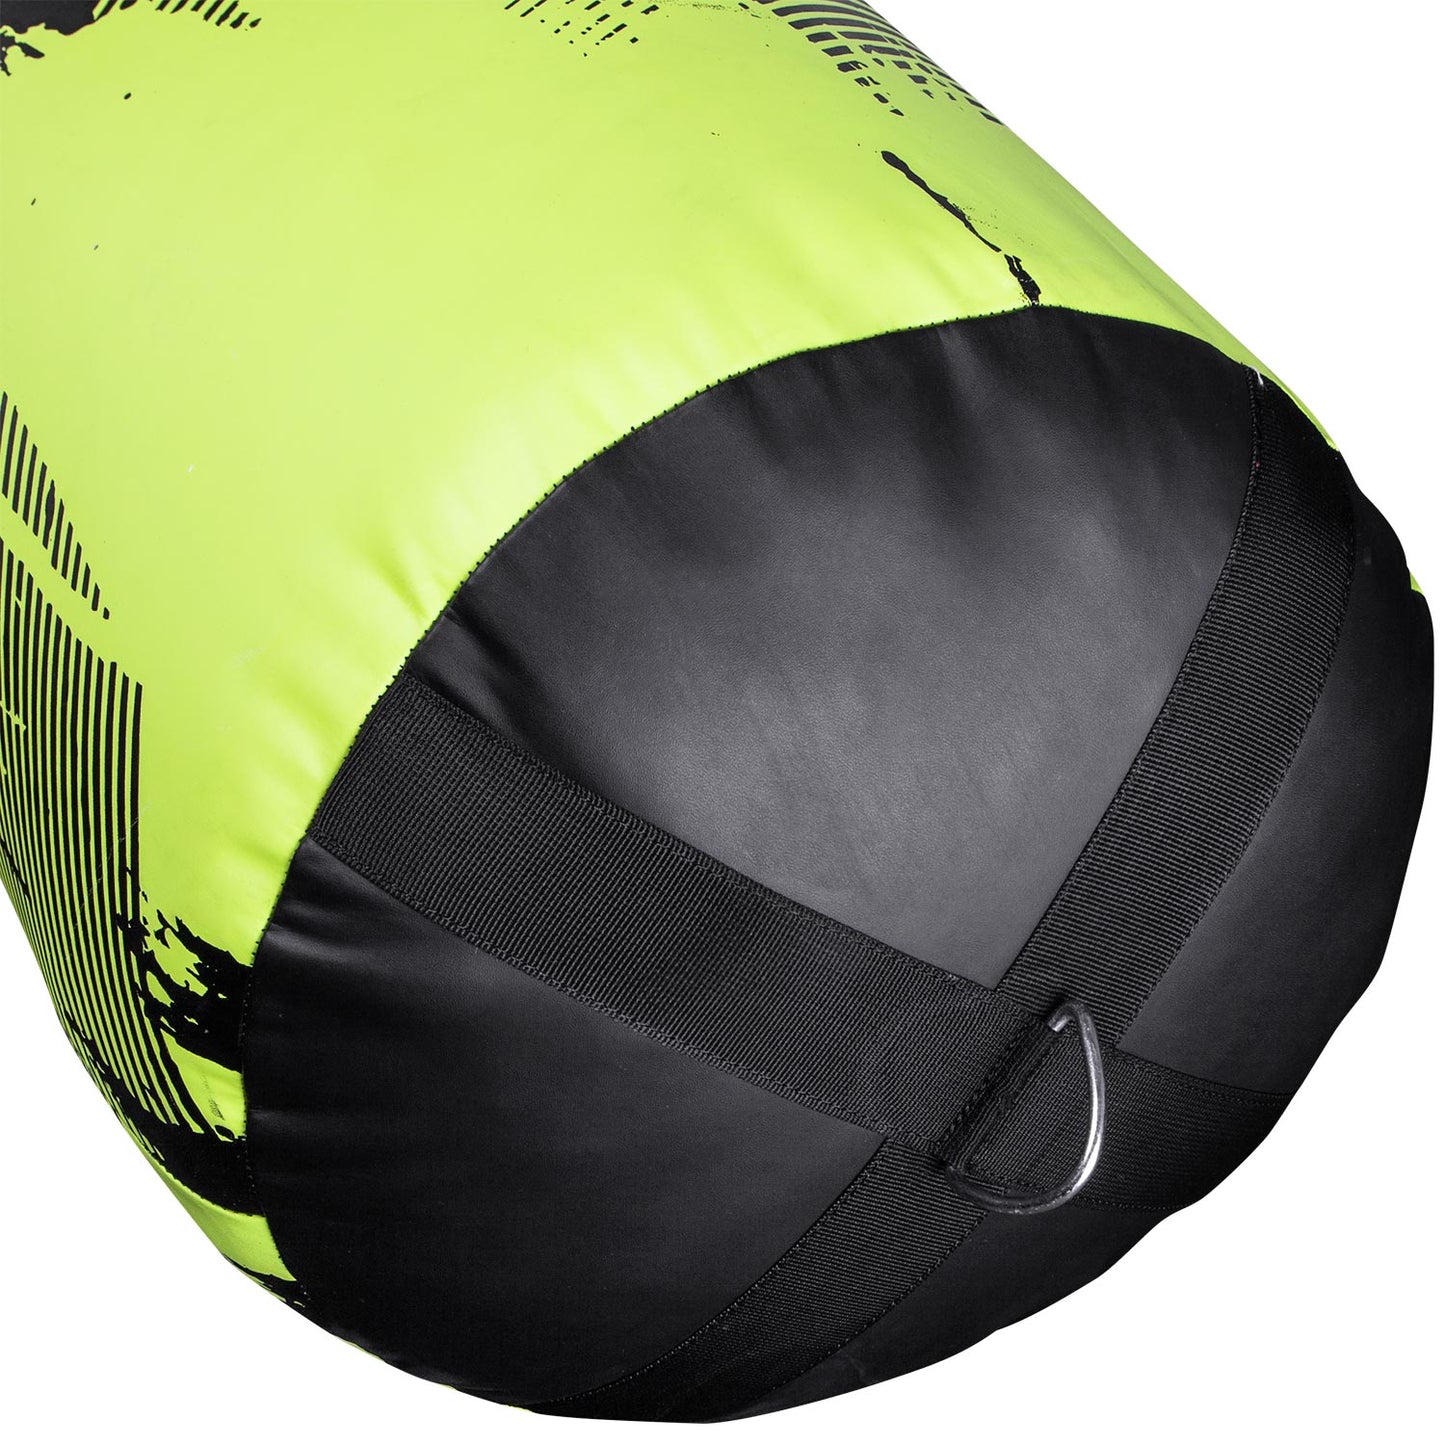 Venum Hurricane Punching Bag - Neo Yellow/Black - 130 cm